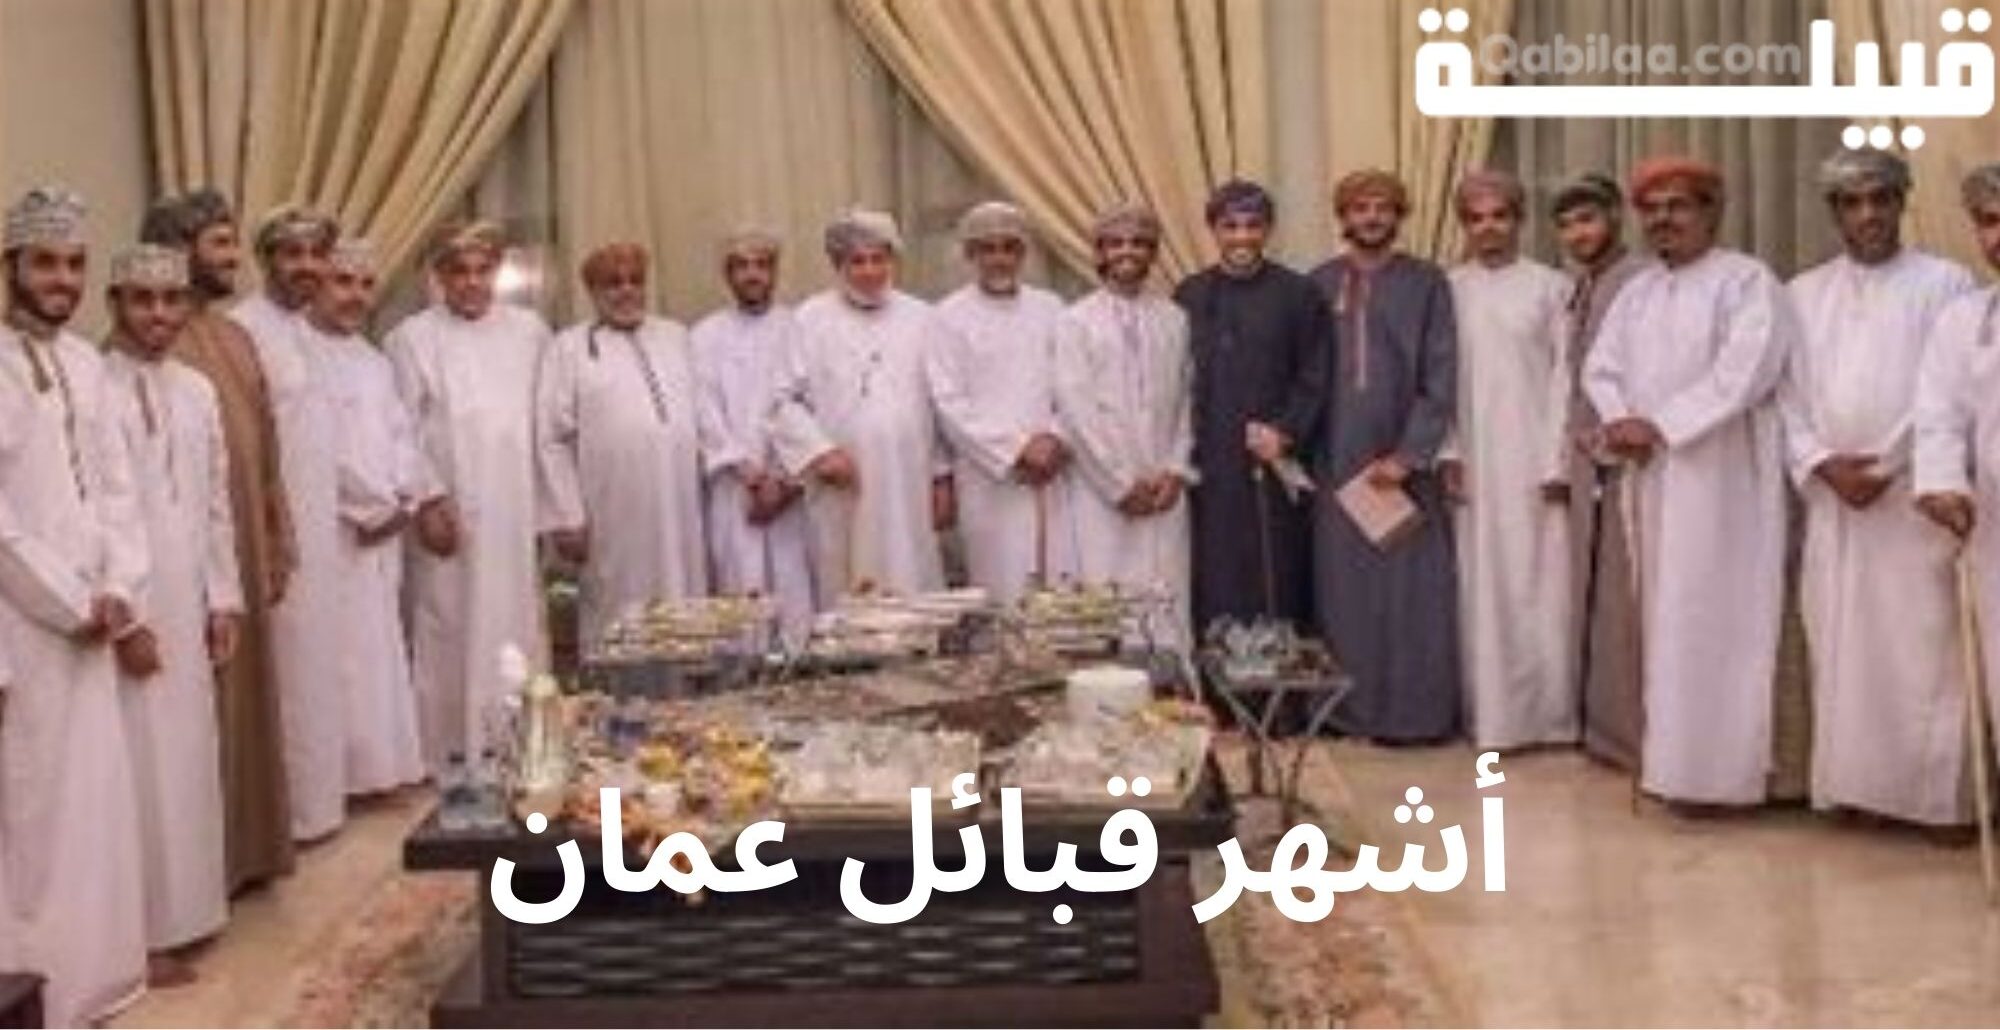 ما هي أكبر قبيلة في سلطنة عمان